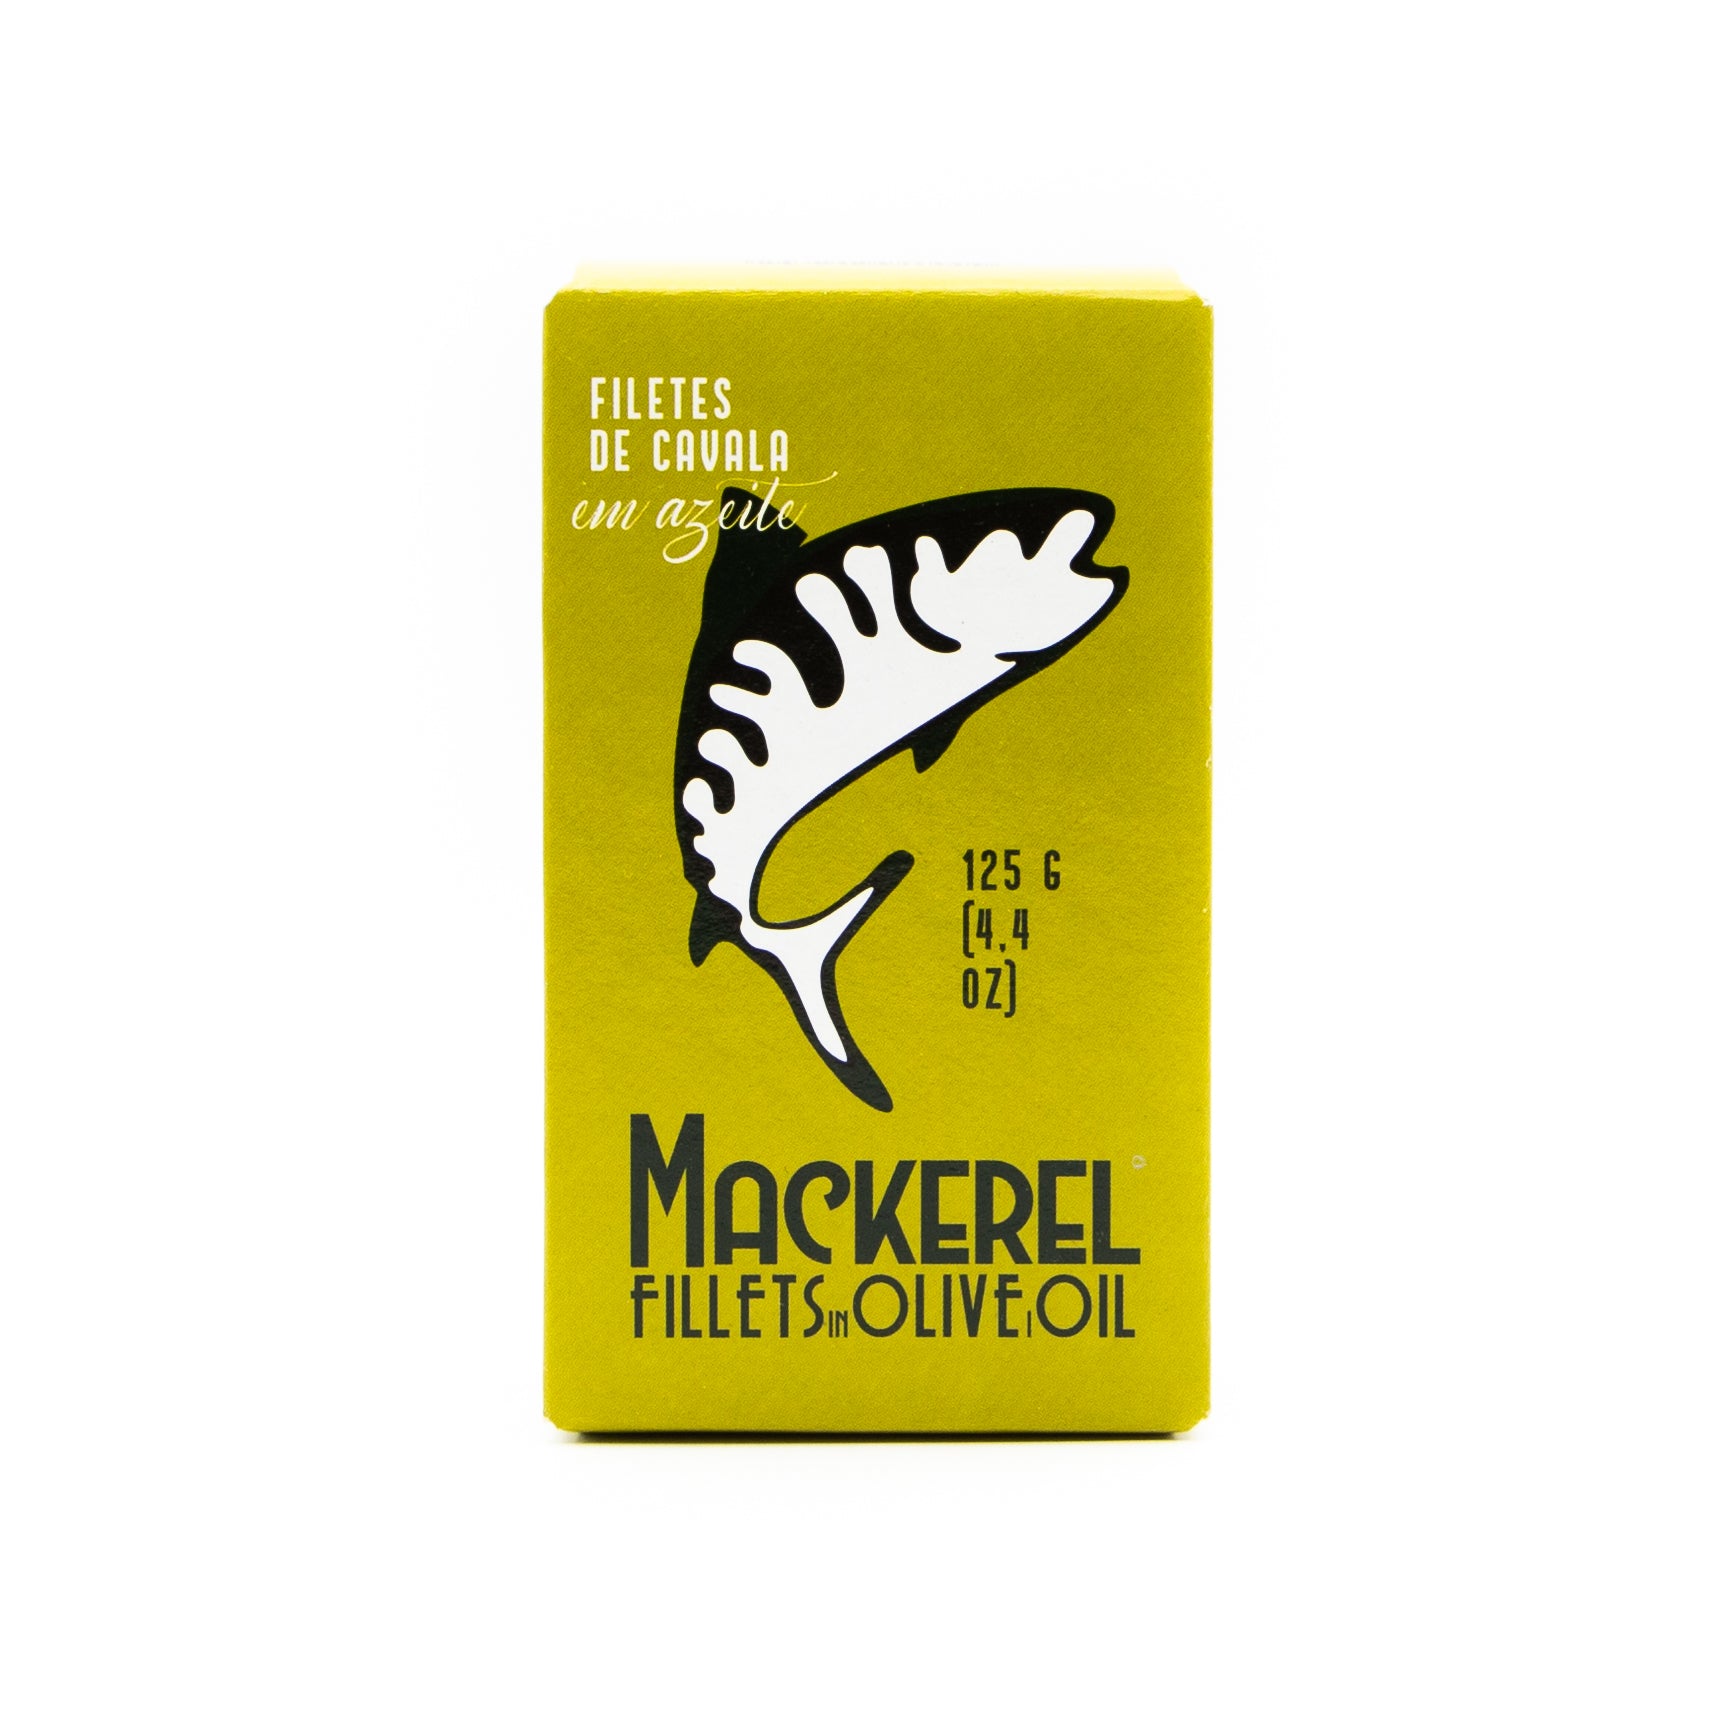 Ati Manel - Mackerel Fillets in Olive Oil